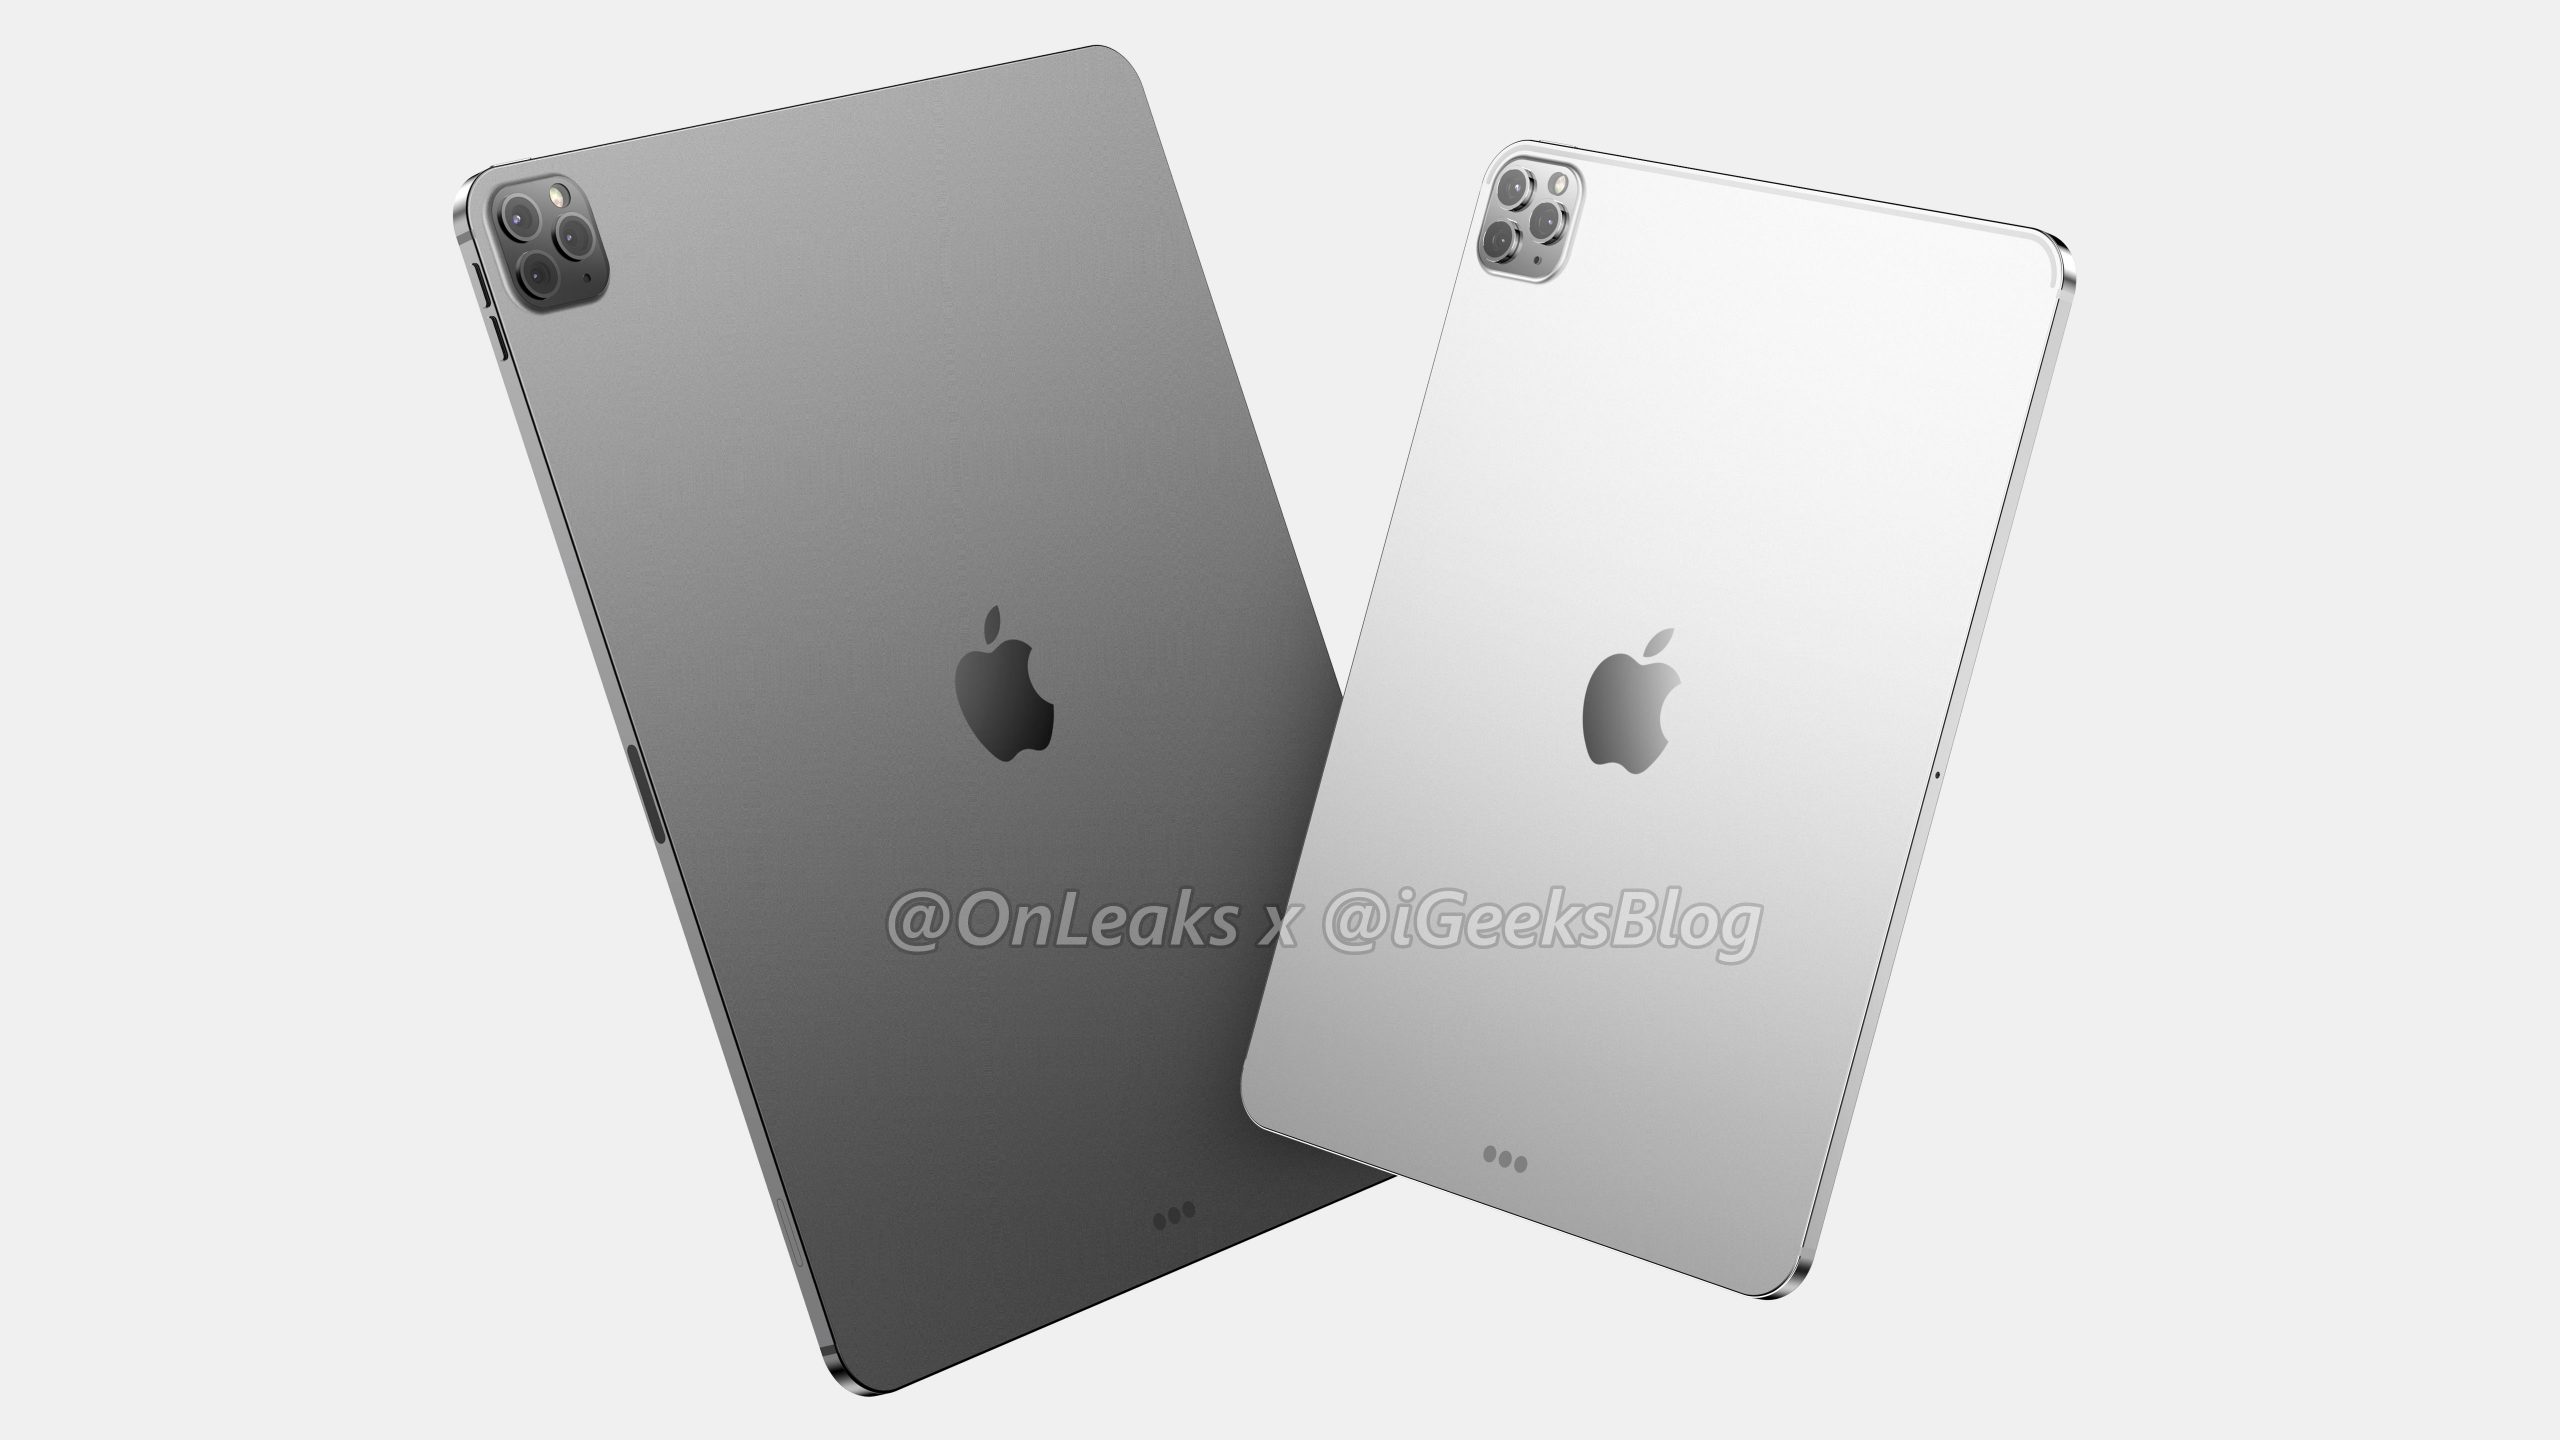 iPad Pro 2020 sẽ có
hai phiên bản, một phiên bản sẽ ra mắt cùng với iPhone SE 2
(iPhone 9) vào tháng 3 tới